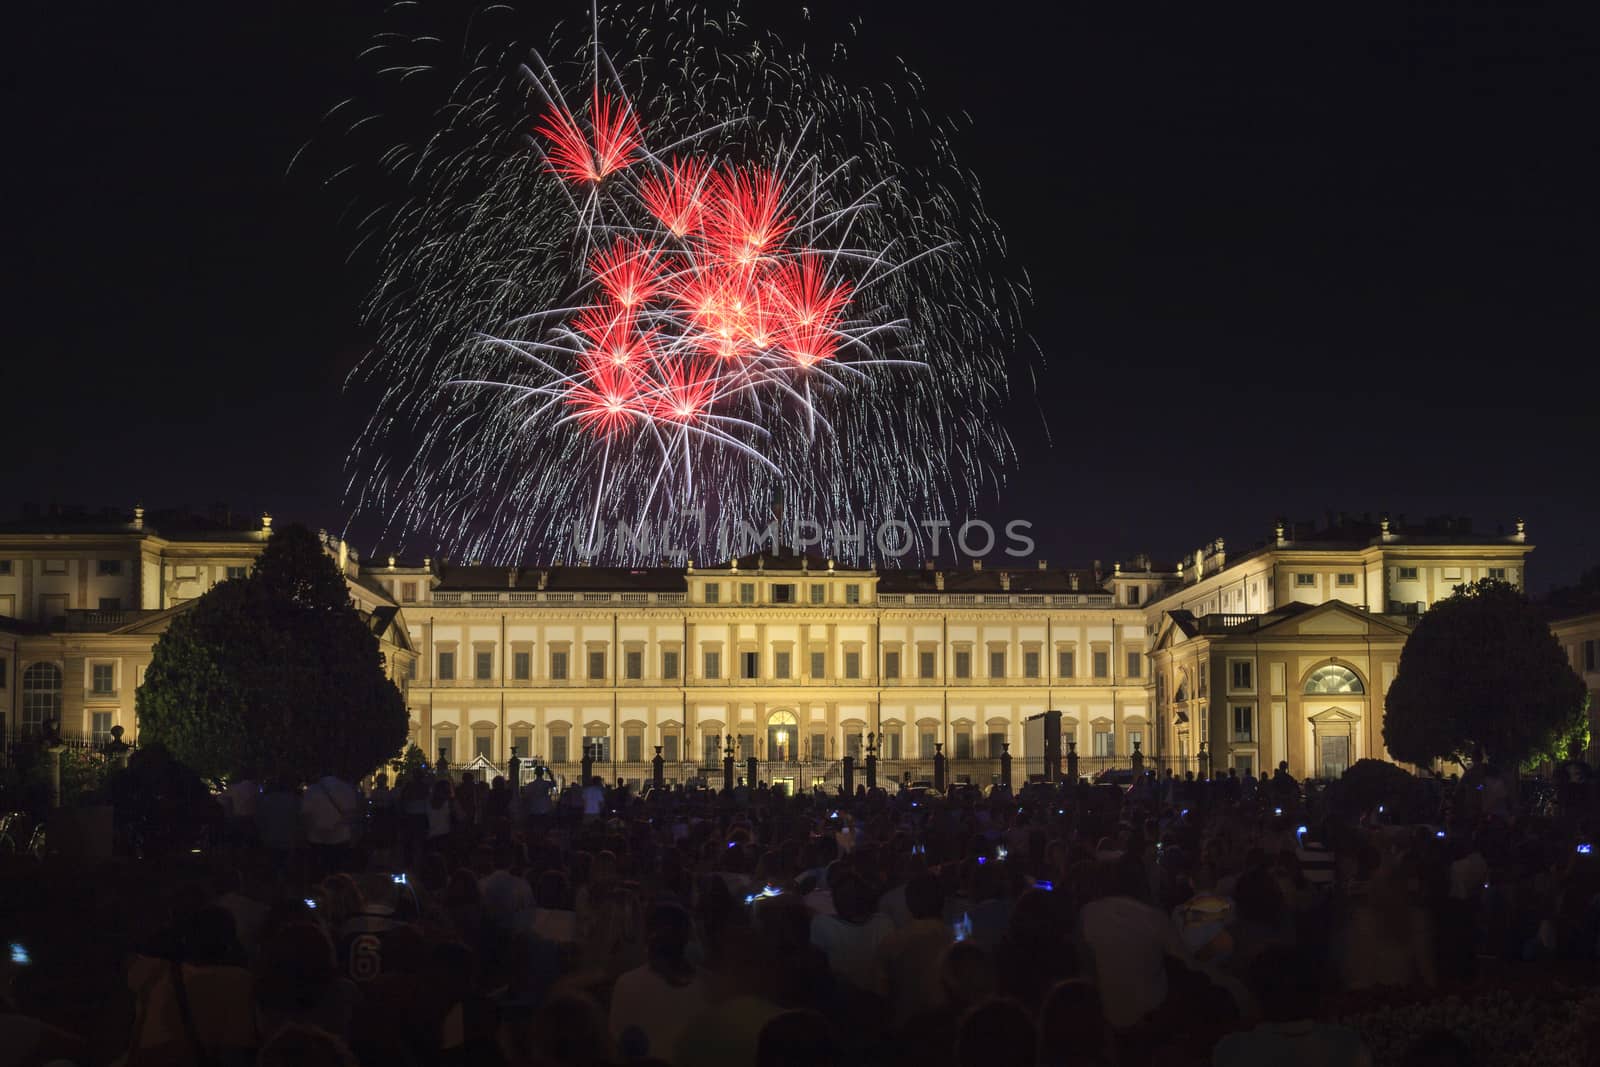 Fireworks on the Villa Reale Monza by starryeyedfineart